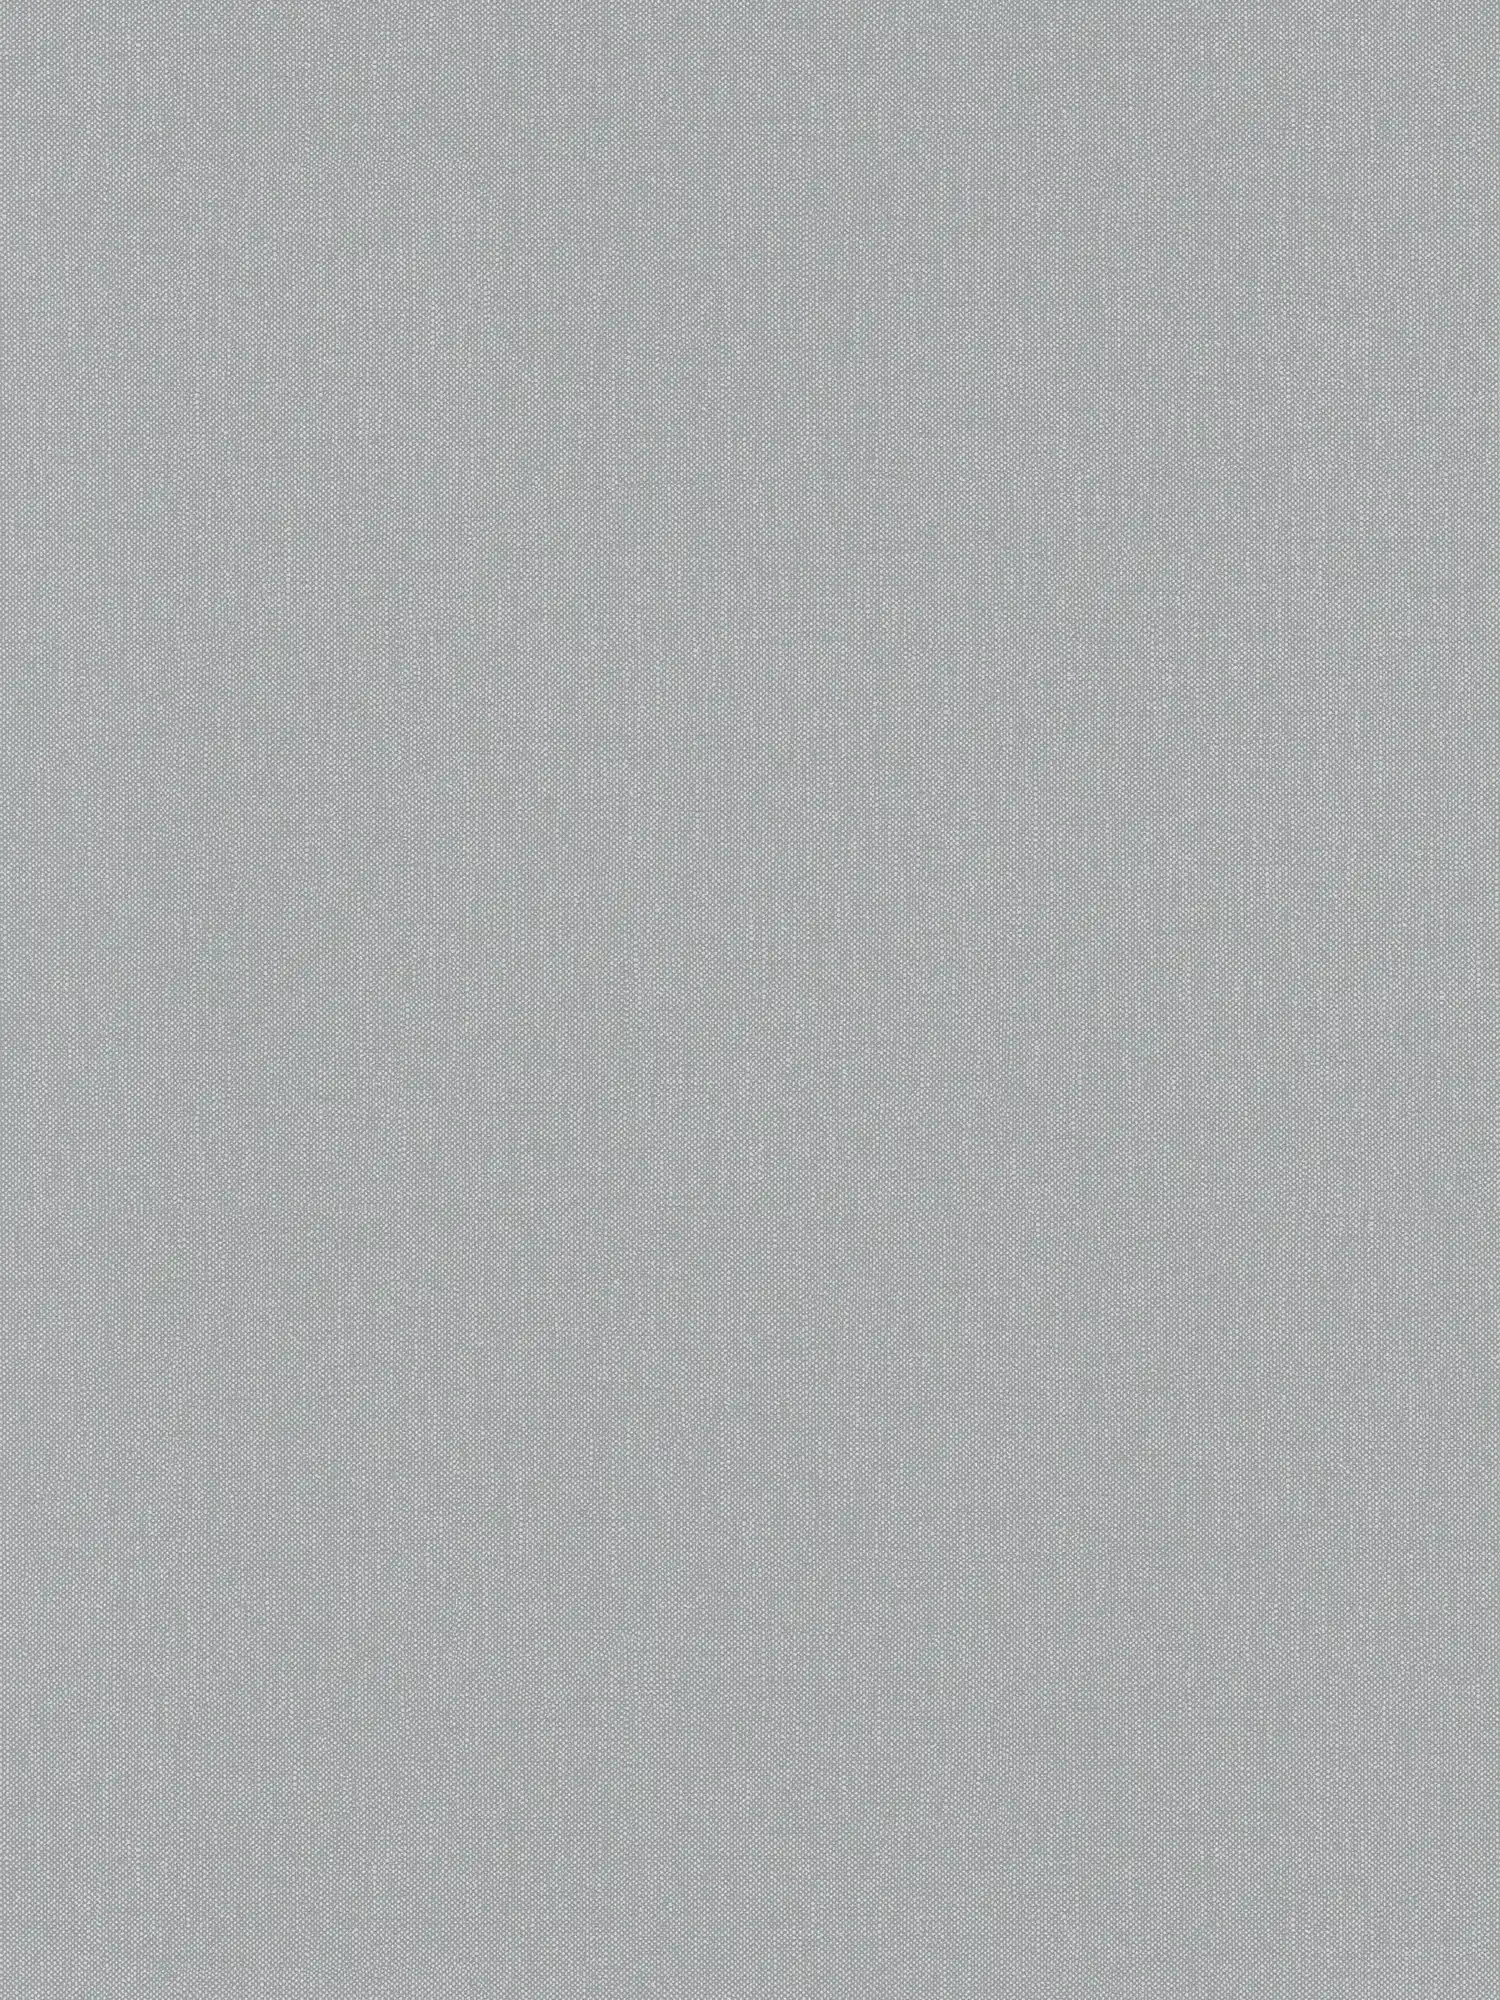 Carta da parati in lino grigio con disegno a struttura in stile country
